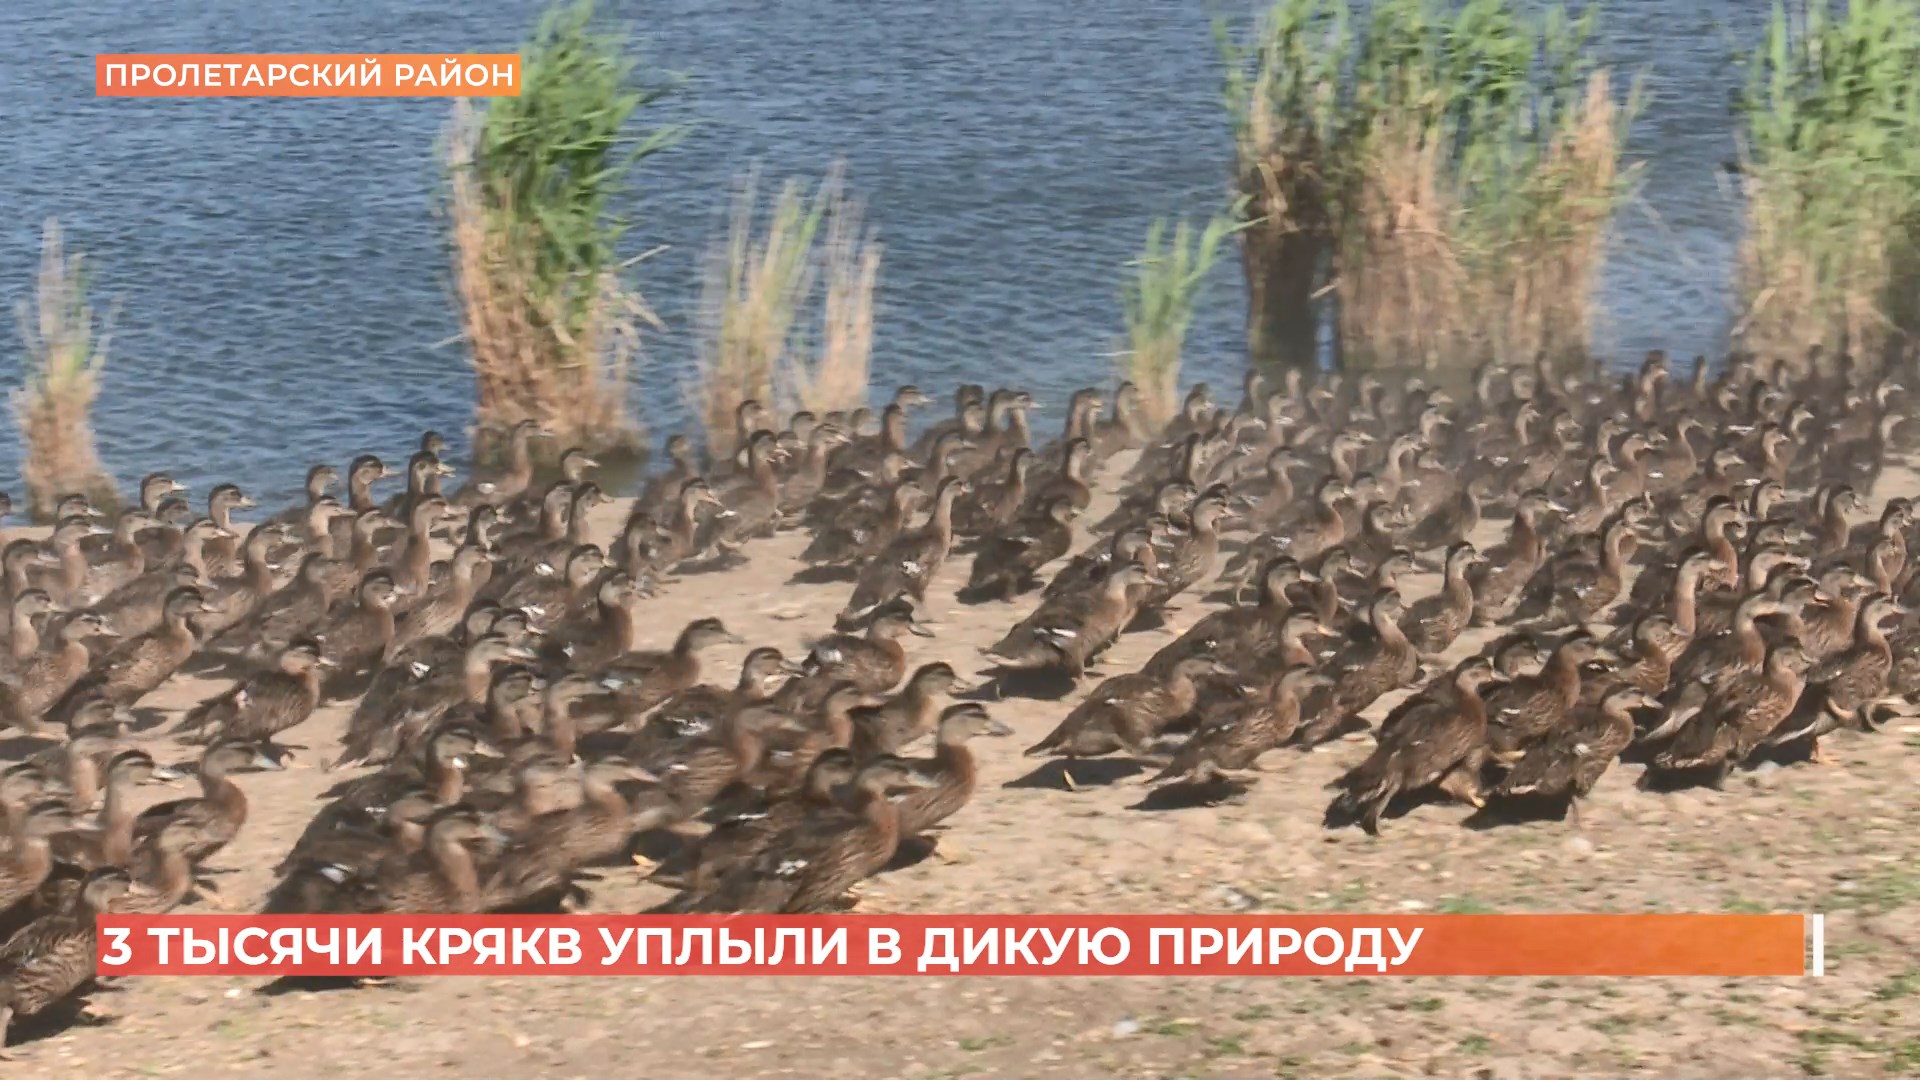 Три тысяч крякв выпустили в дикую природу в Пролетарском районе